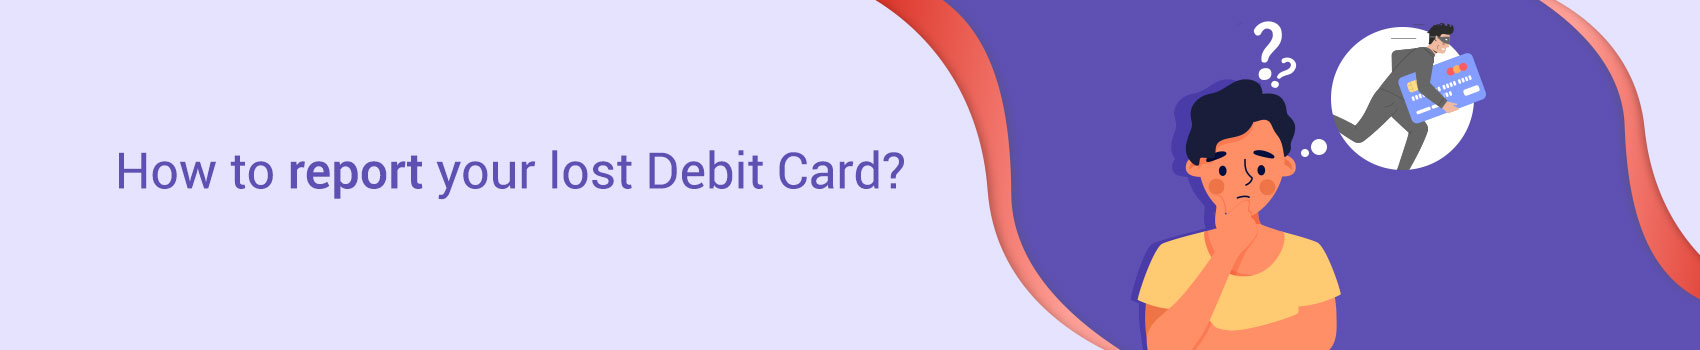 5 Methods to Report a Lost or Stolen Debit Card